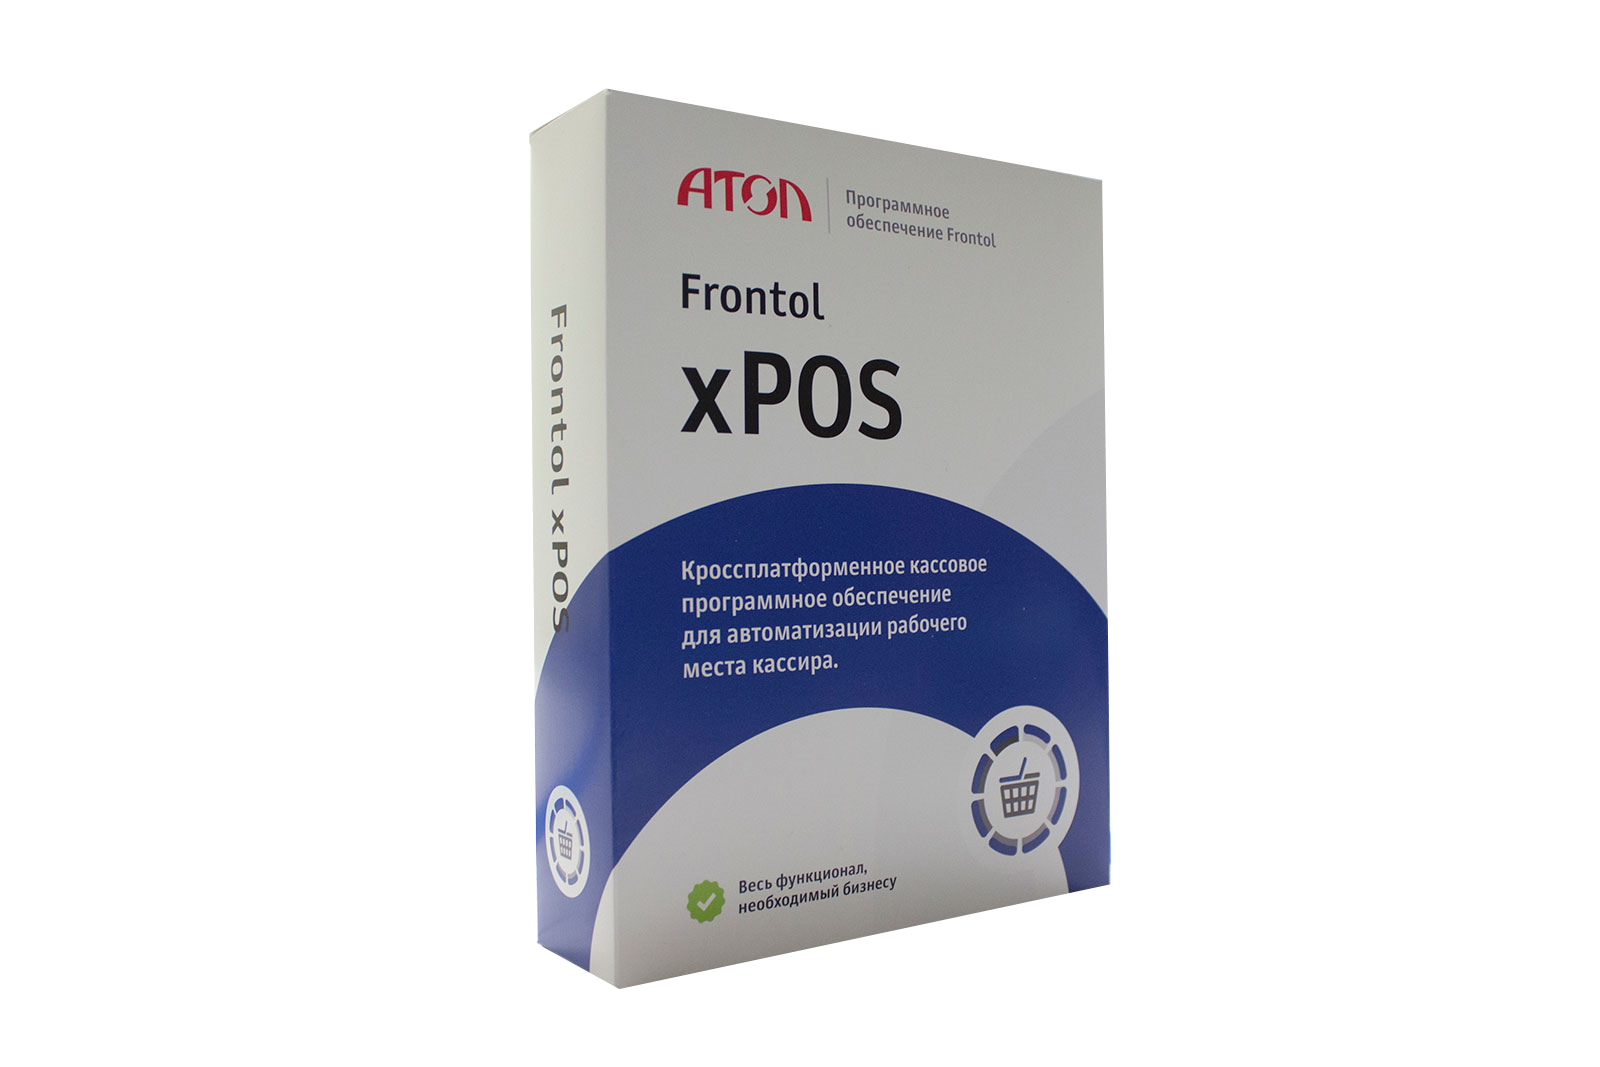 Фронтол юнит. Фронтол XPOS. Frontol XPOS 3. Программное обеспечение Frontol. По Frontol XPOS 3 release Pack 1 год.